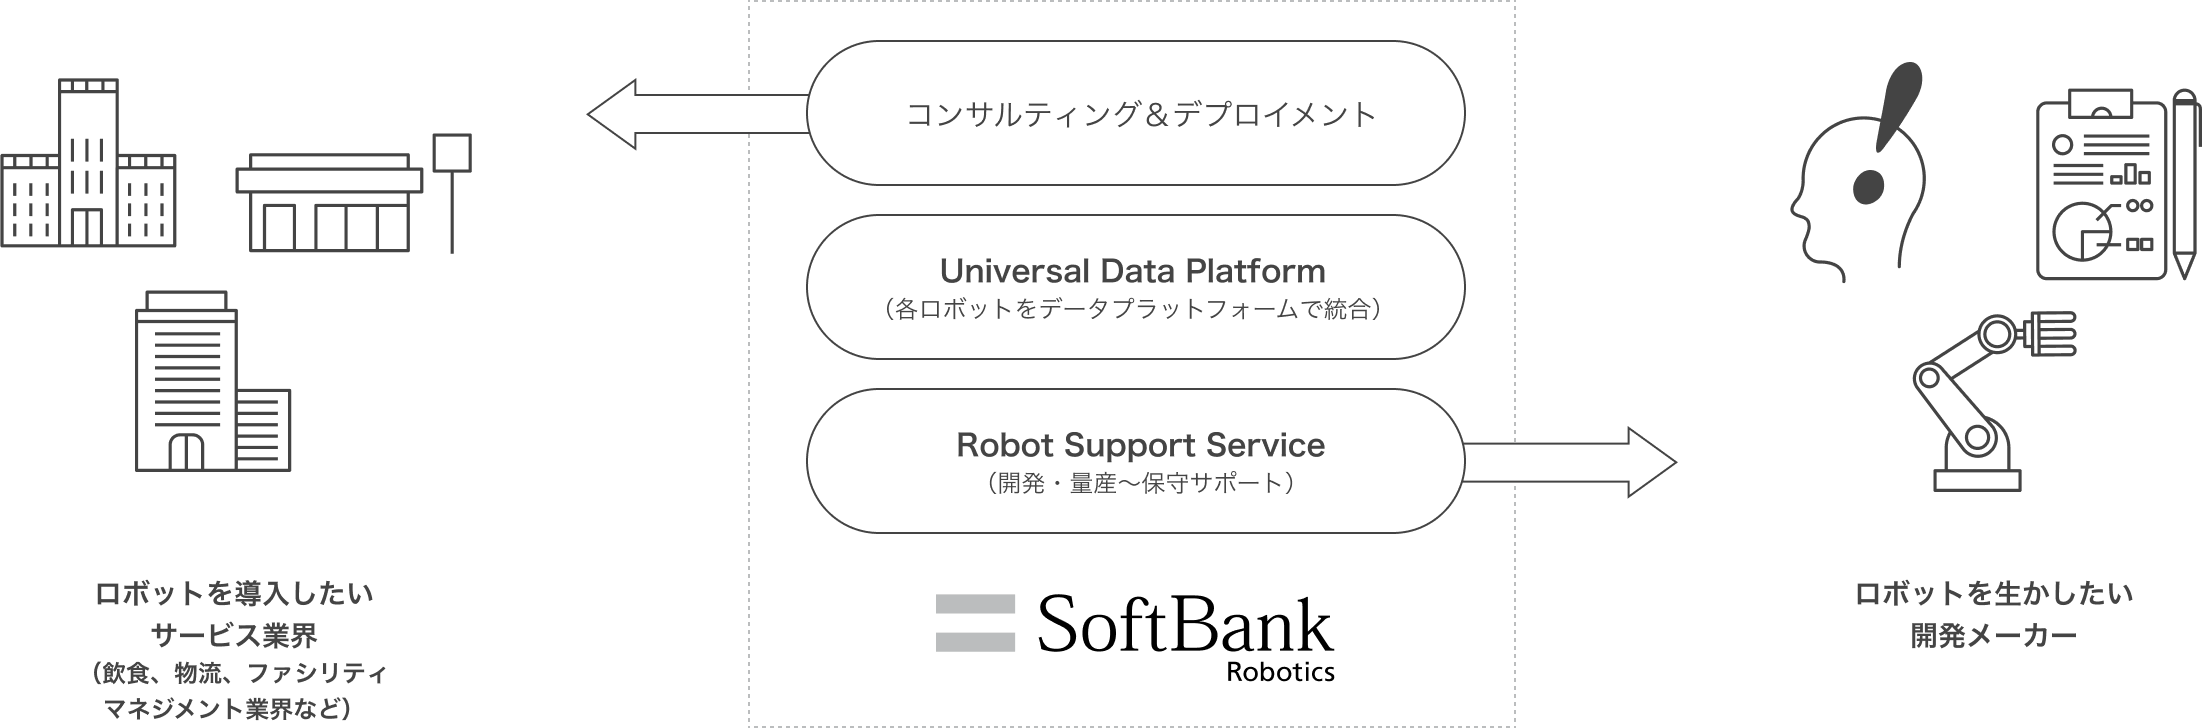 SoftBank Robotics：コンサルティング&アウトソーシング → ロボットを導入したいサービス業界（飲食、物流、ファシリティマネジメント業界など） SoftBank Robotics：Universal Data Platform（各ロボットをデータプラットフォームで結合） SoftBank Robotics：Robot Support Service（開発・量産～保守サポート）→ロボットを活かしたい開発メーカー